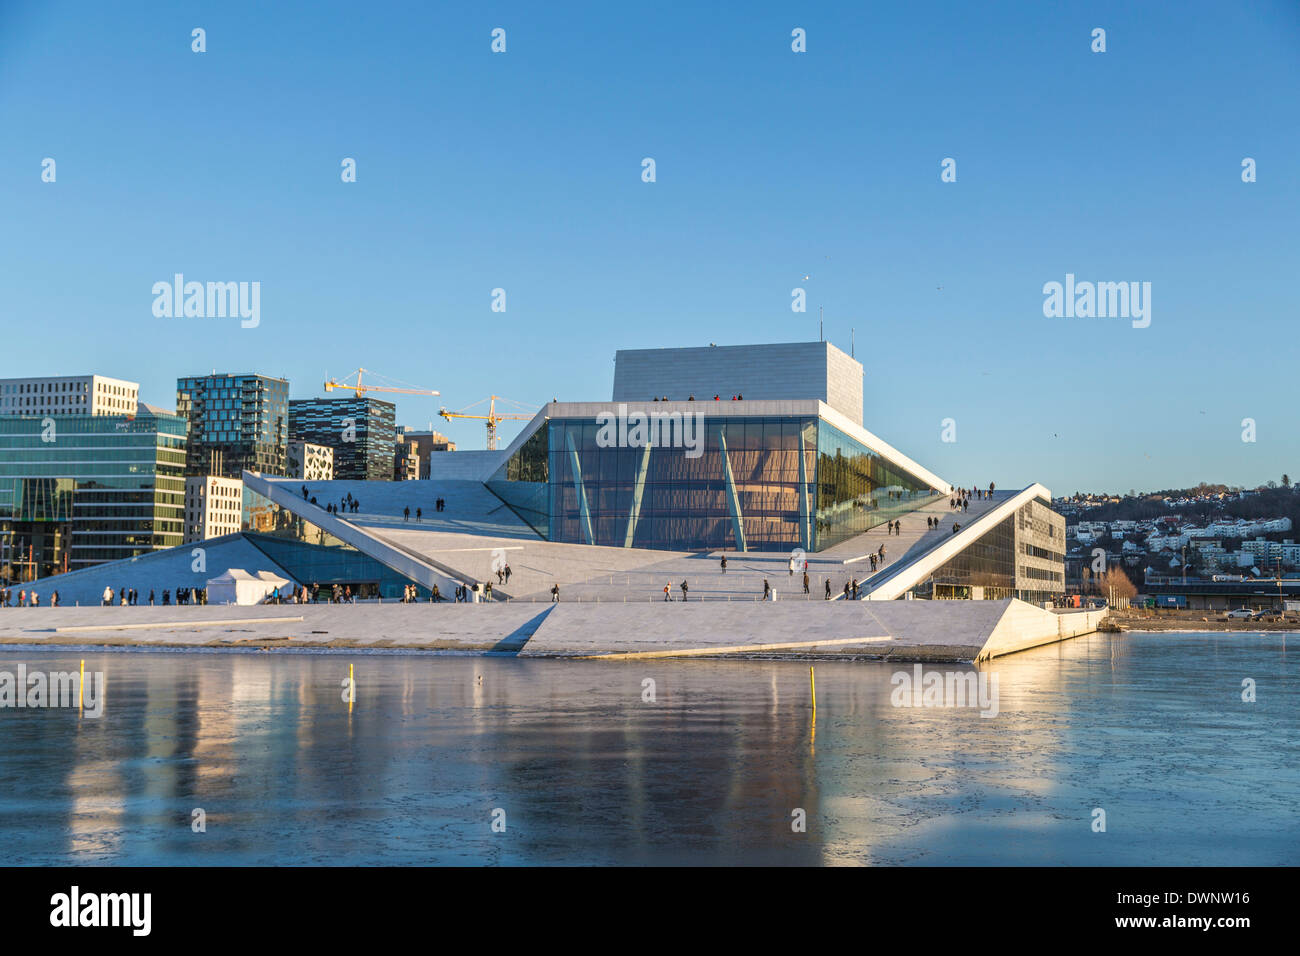 Opera House, il marmo bianco di Carrara, Oslo, Norvegia Foto Stock